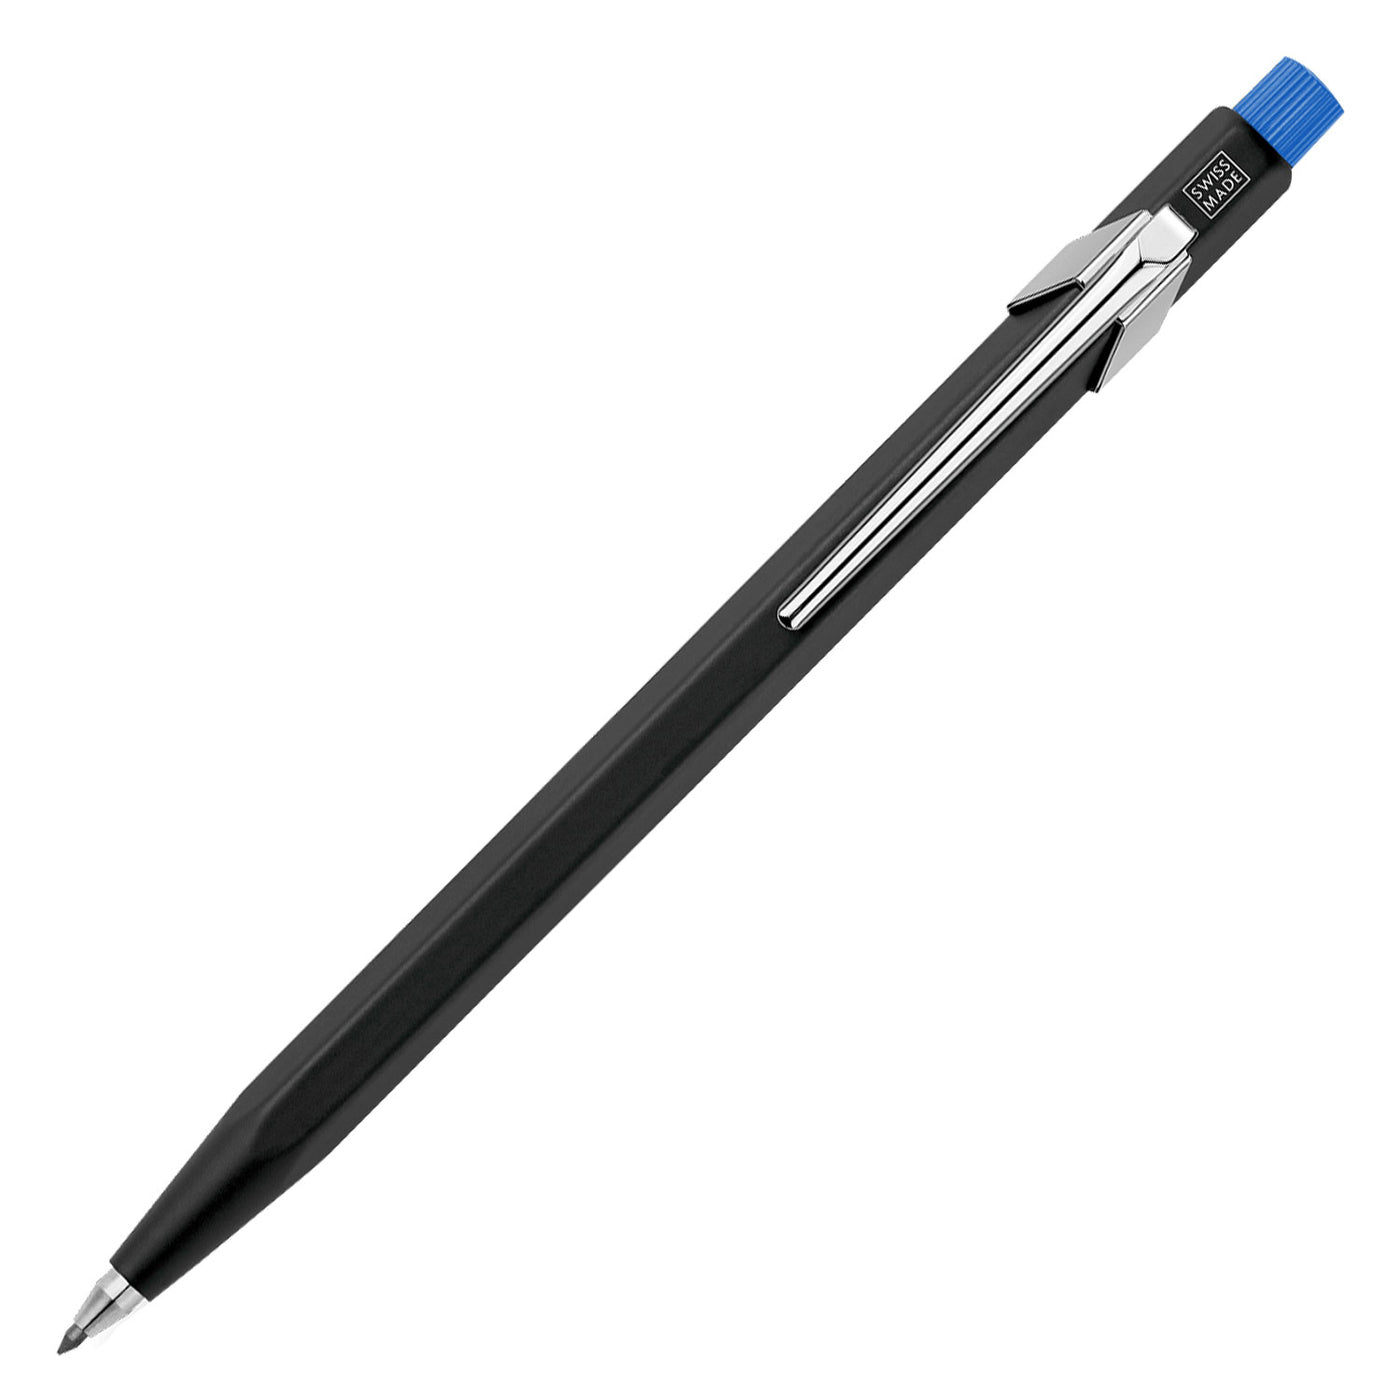 Caran d'Ache Fixpencil 2mm Mechanical Pencil - Matt Black & Blue 1